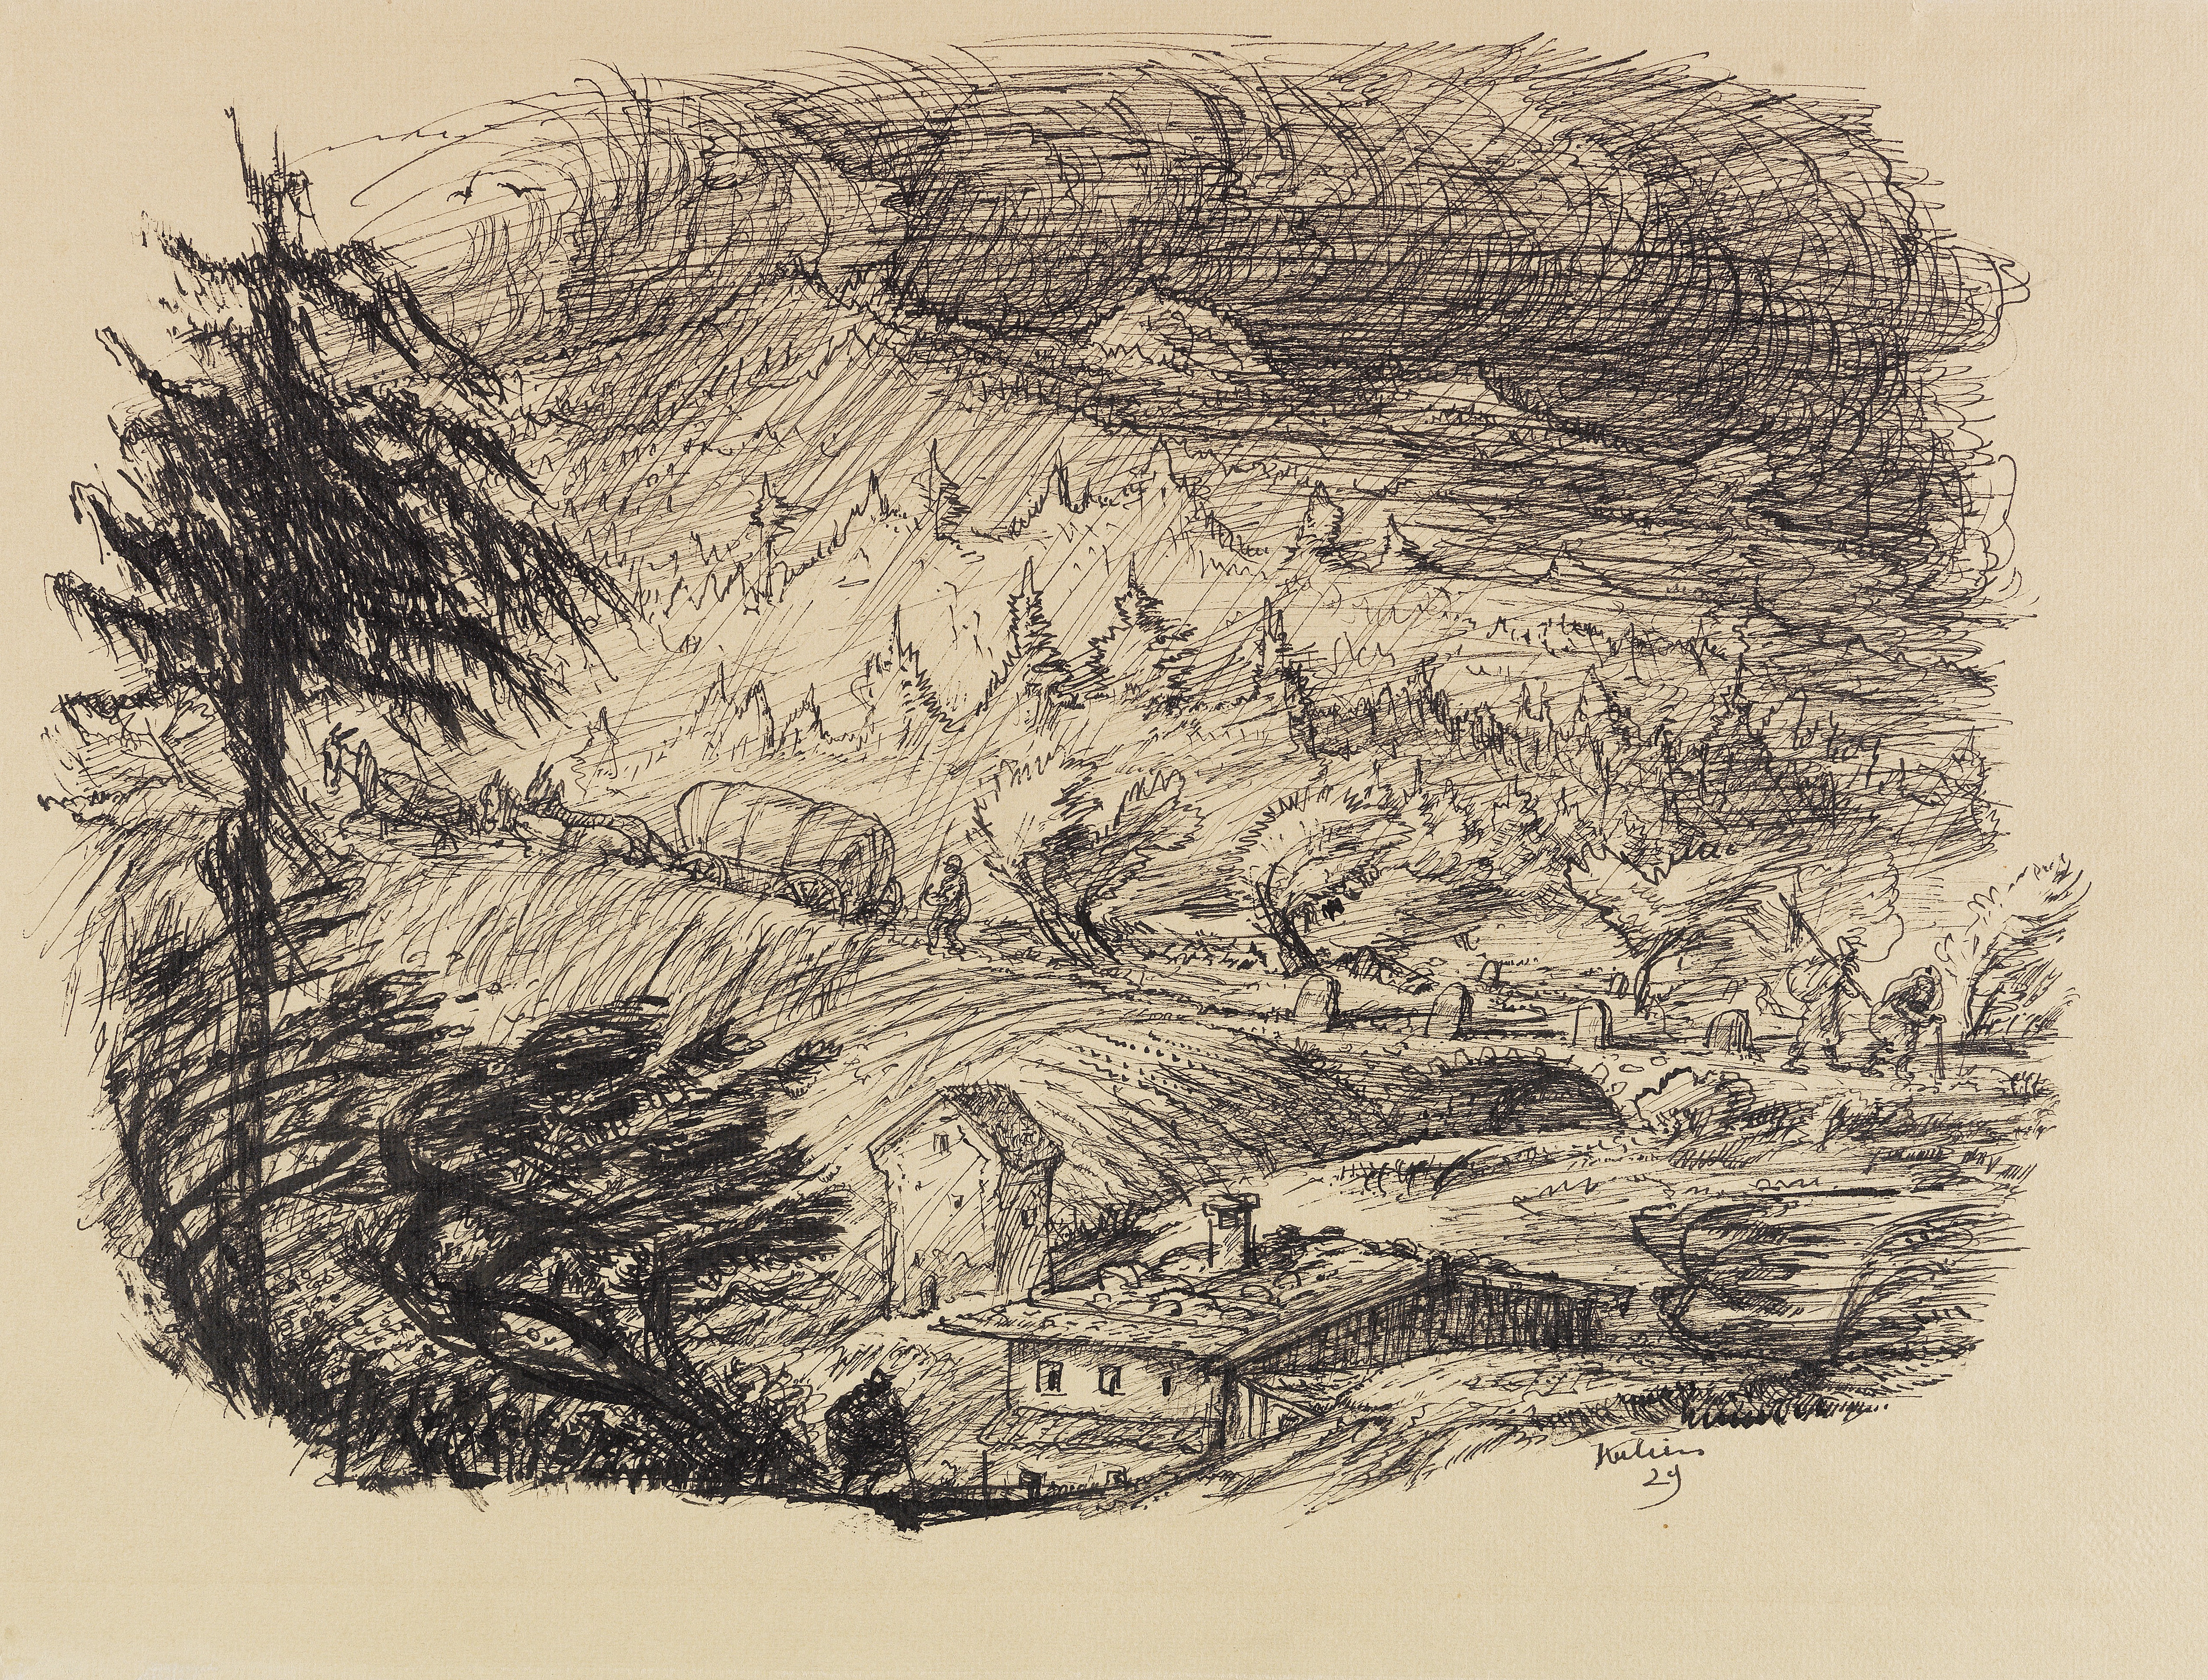 Artwork by Alfred Kubin, Sturm über Schardenberg (Landschaft im Regen), Made of Pen and India ink drawing